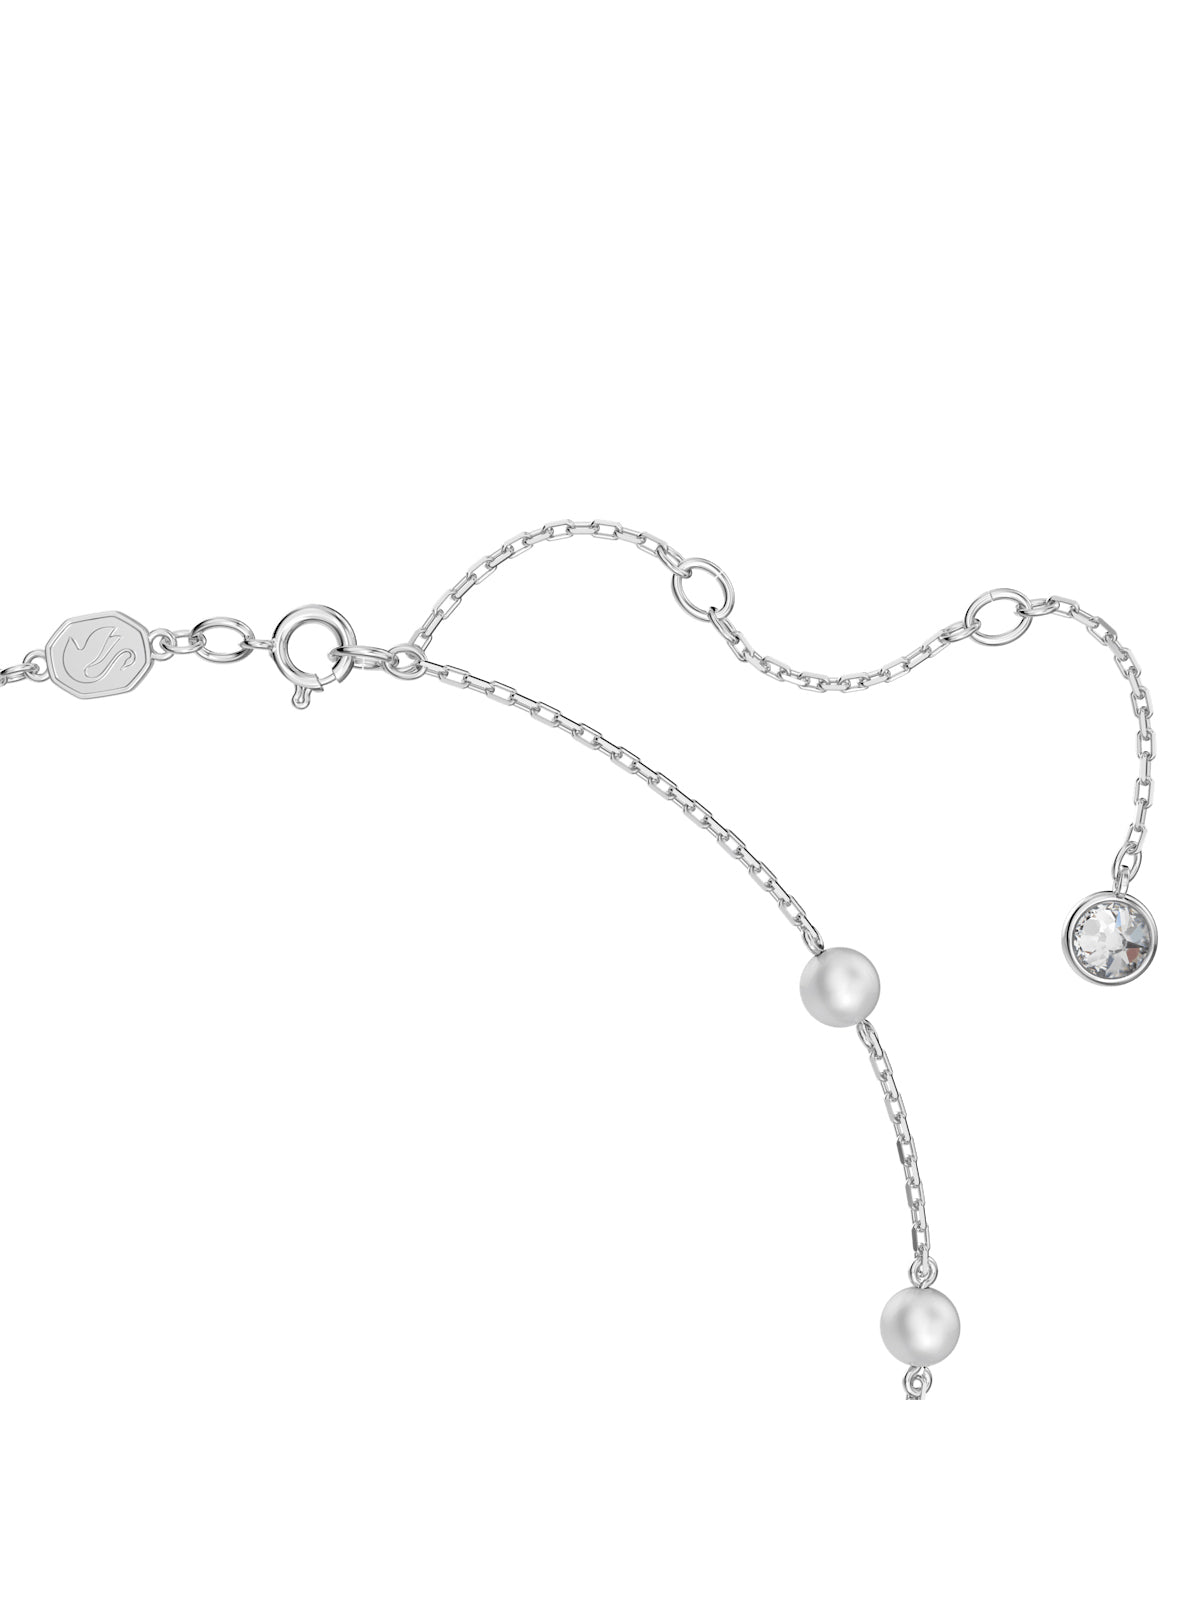 Swarovski Stella White Crystal Necklace 5645379